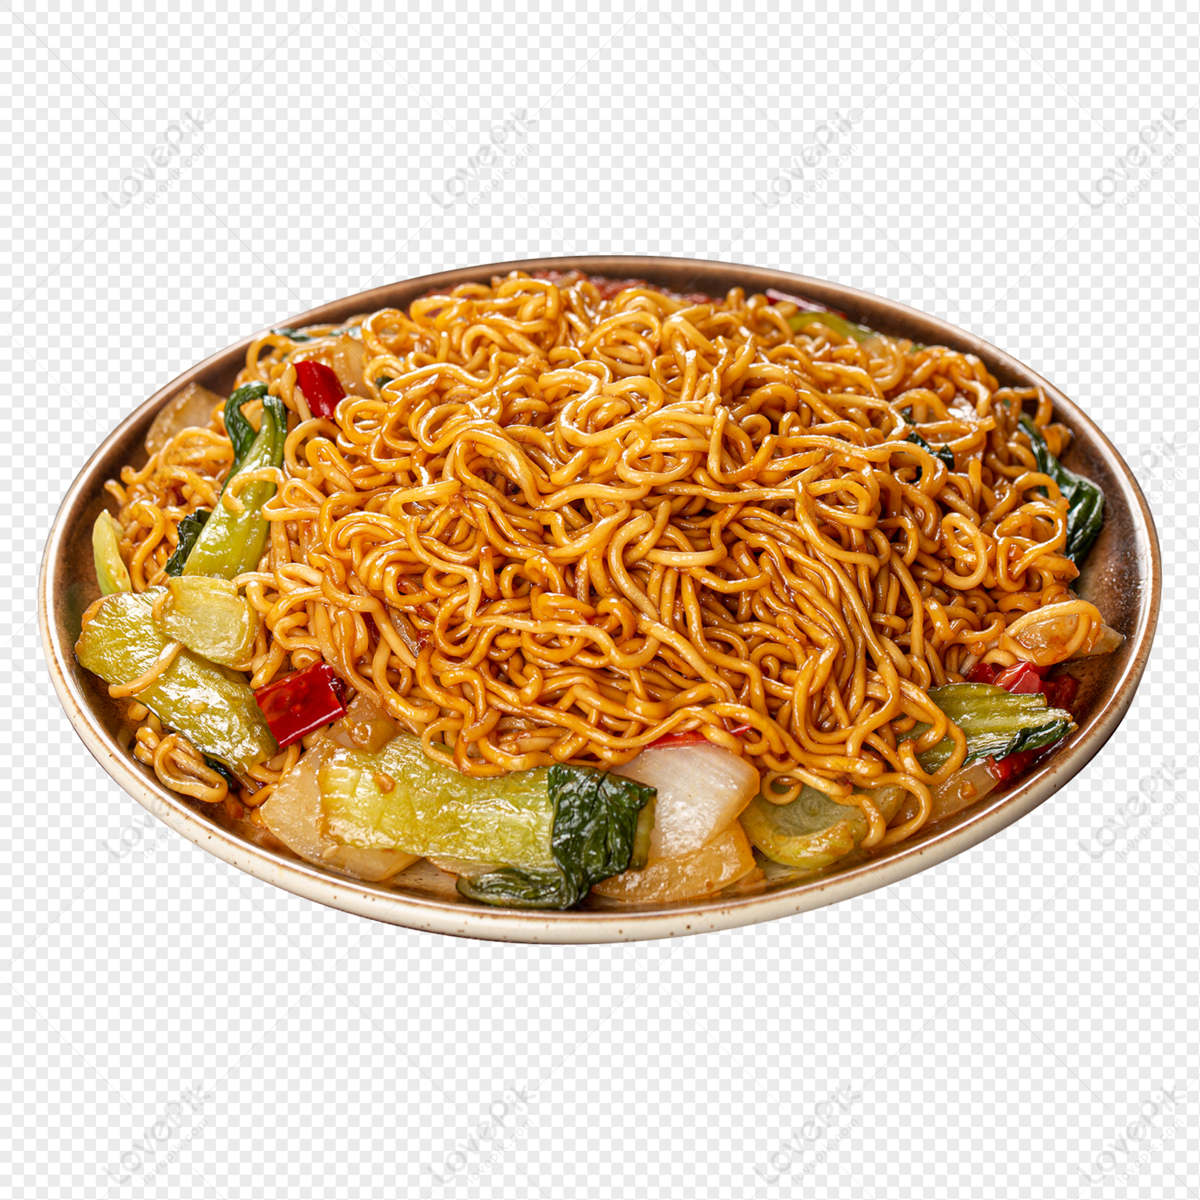 Hình ảnh Noodles Fried Instant PNG Miễn Phí Tải Về - Lovepik